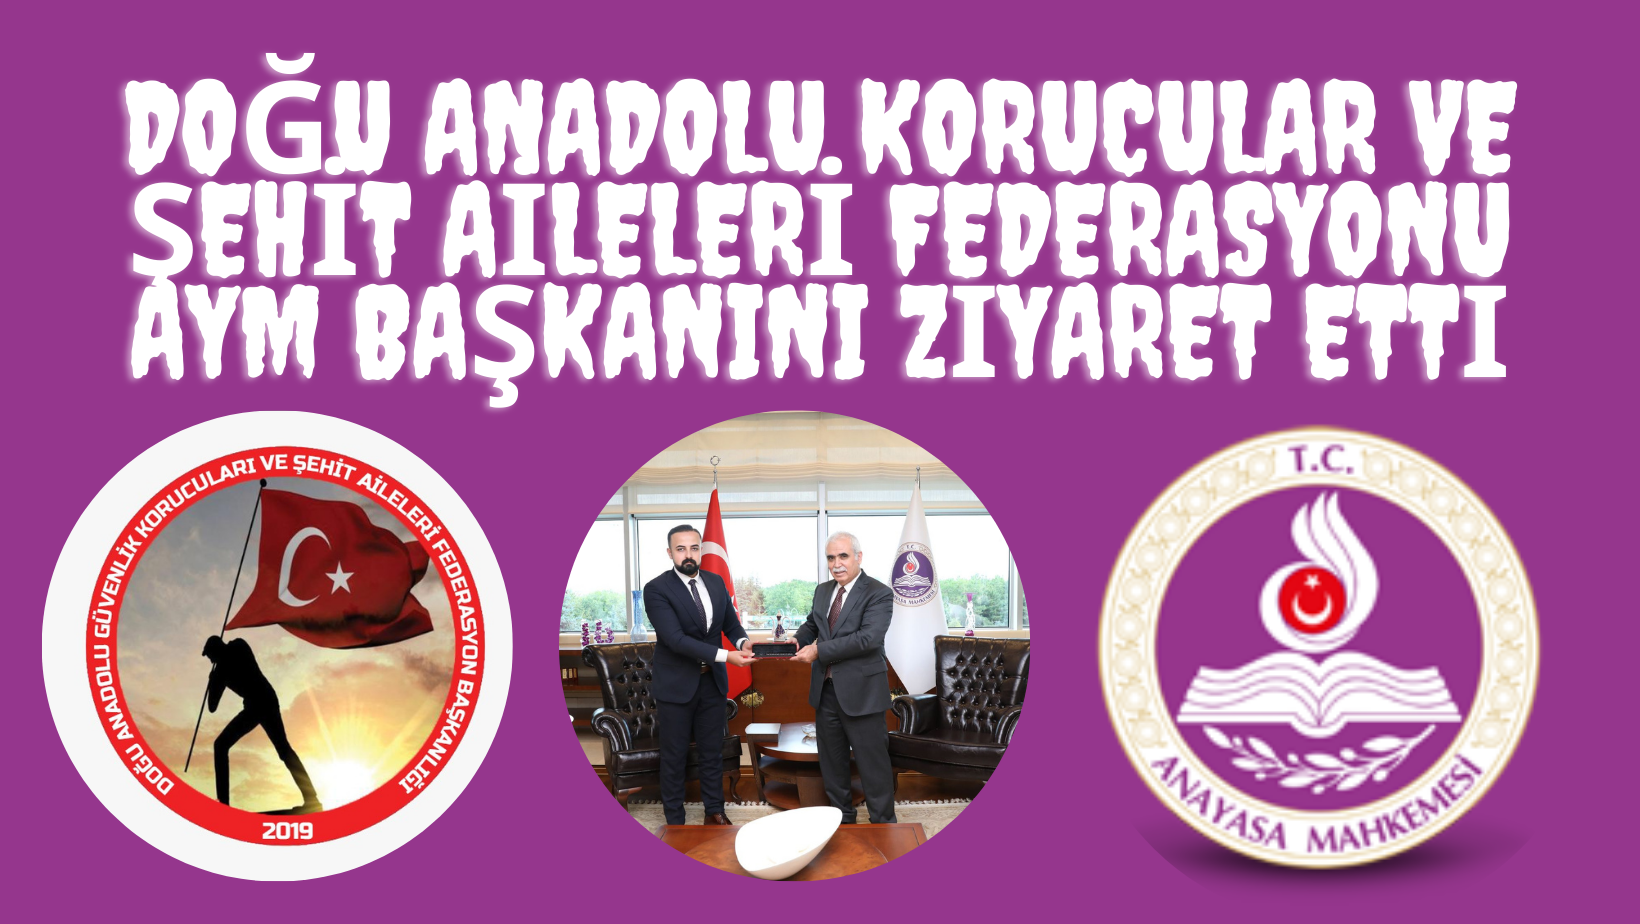 Doğu Anadolu Korucular ve Şehit Aileleri Federasyonu AYM Başkanını Ziyaret Etti